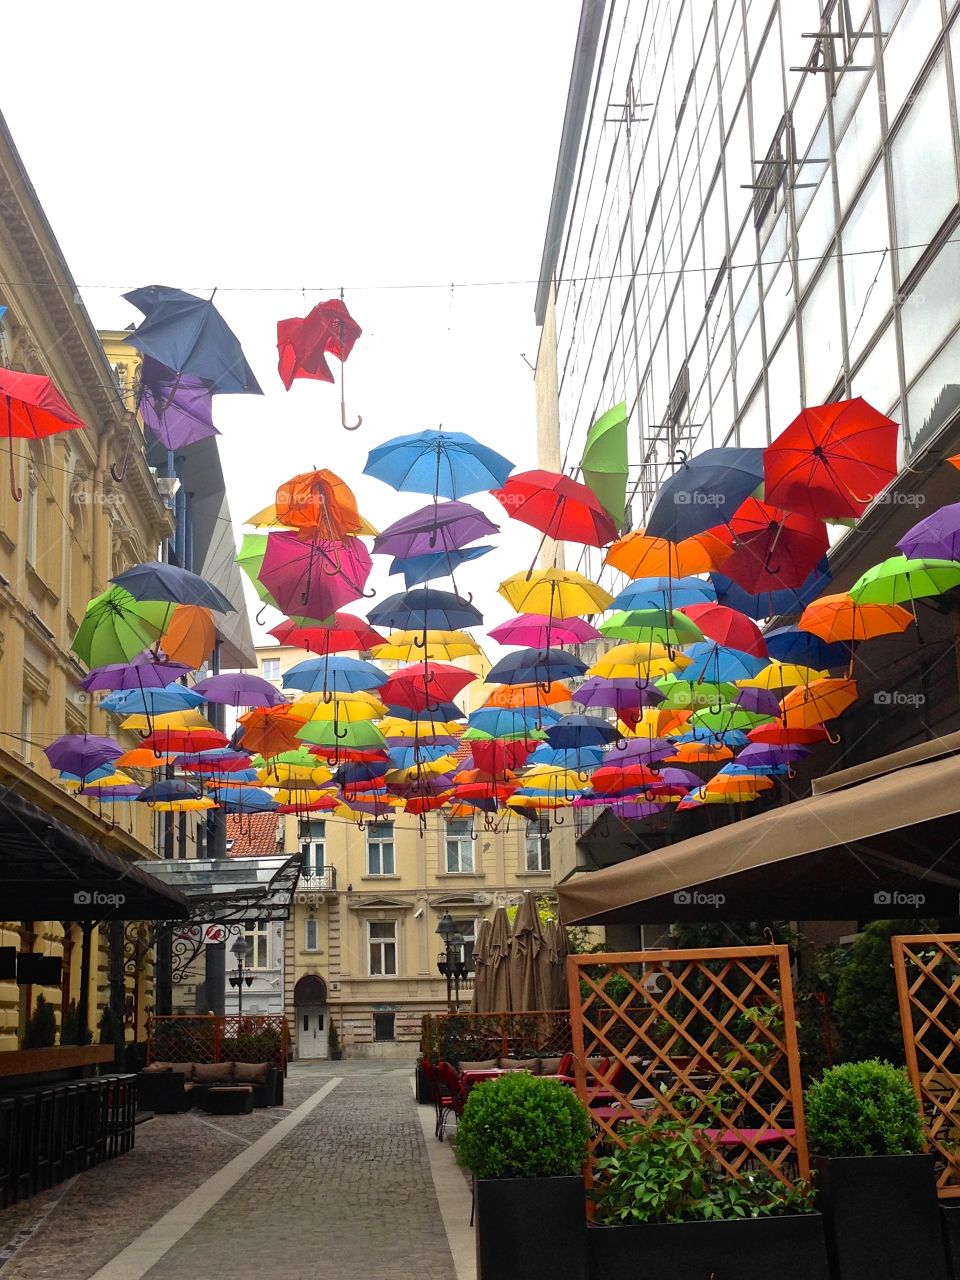 Multicolored umbrellas hanging in city